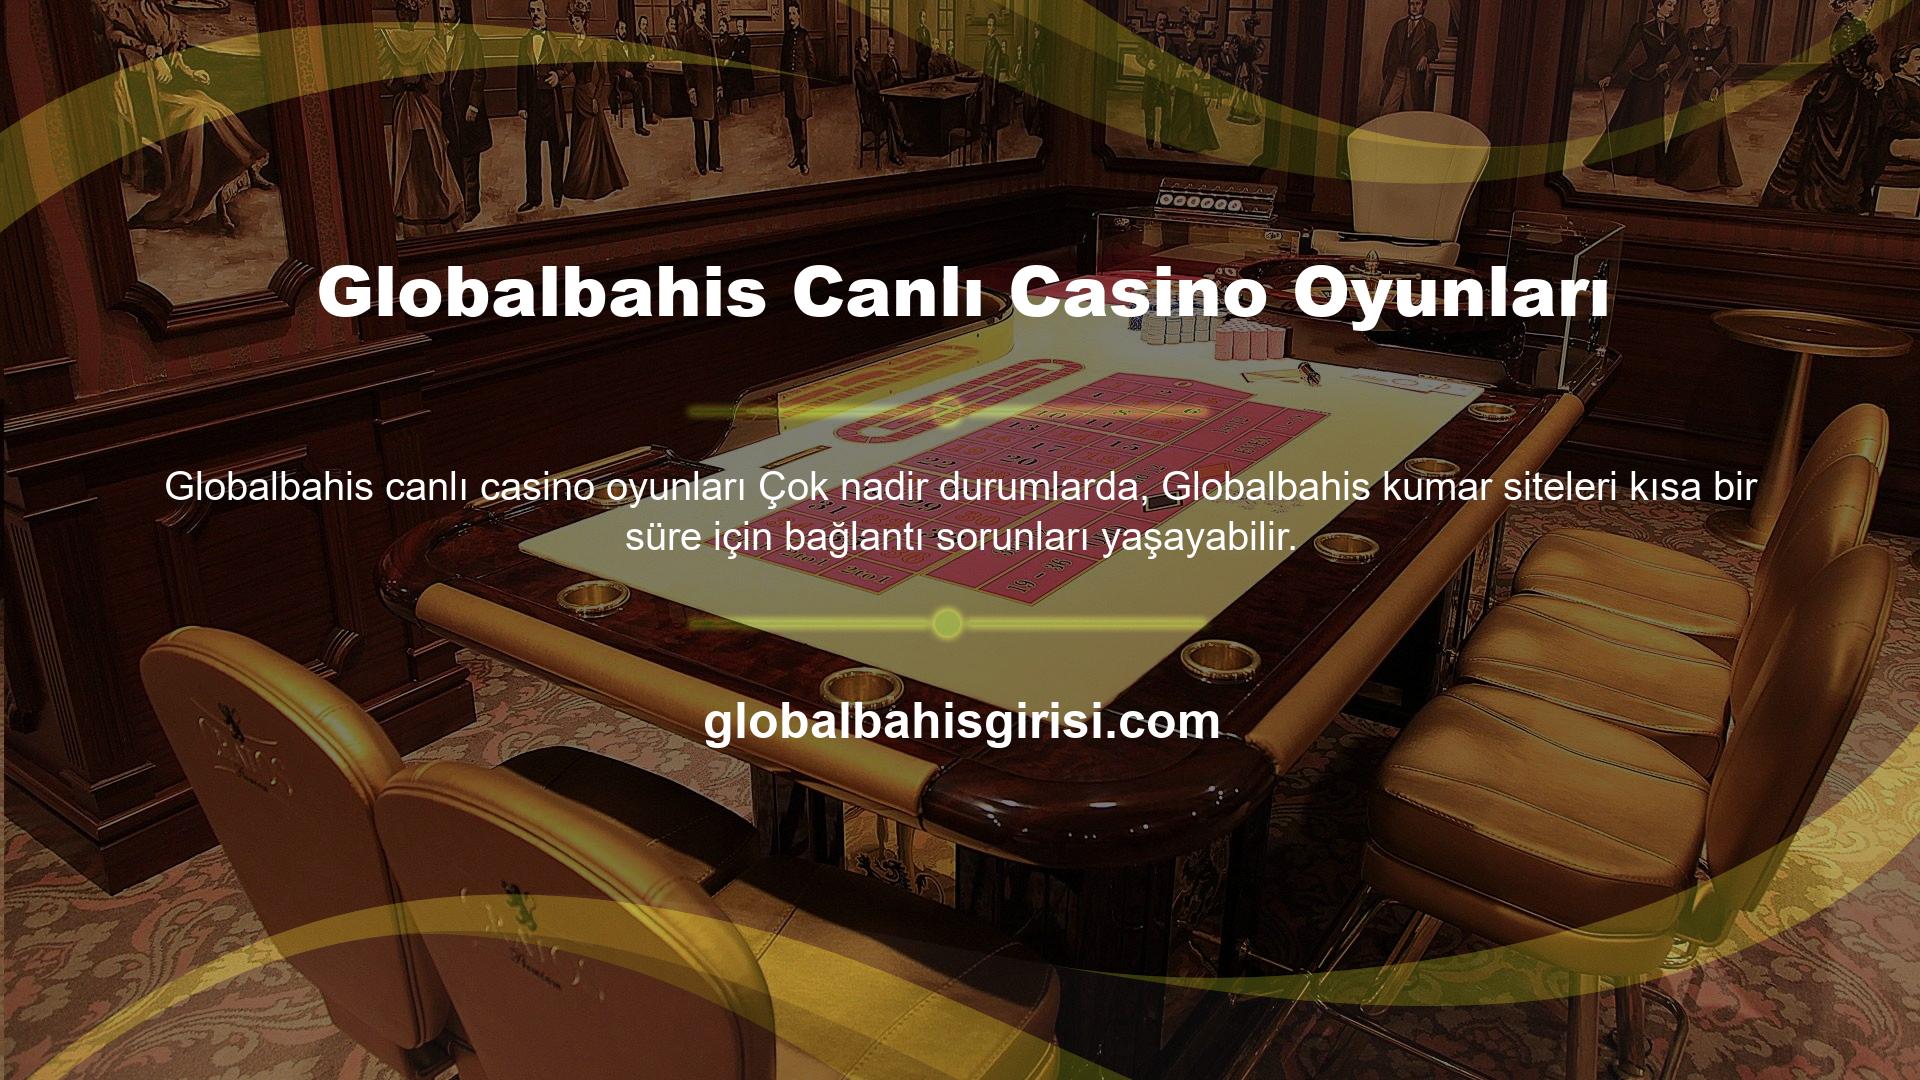 Globalbahis giriş sorunu BTK bloke edildikten sonra Globalbahis canlı casino oyunlarına giriş yaptı, bu durumda kumarbazların kurbanı olmamak için yeni bir adres verildi